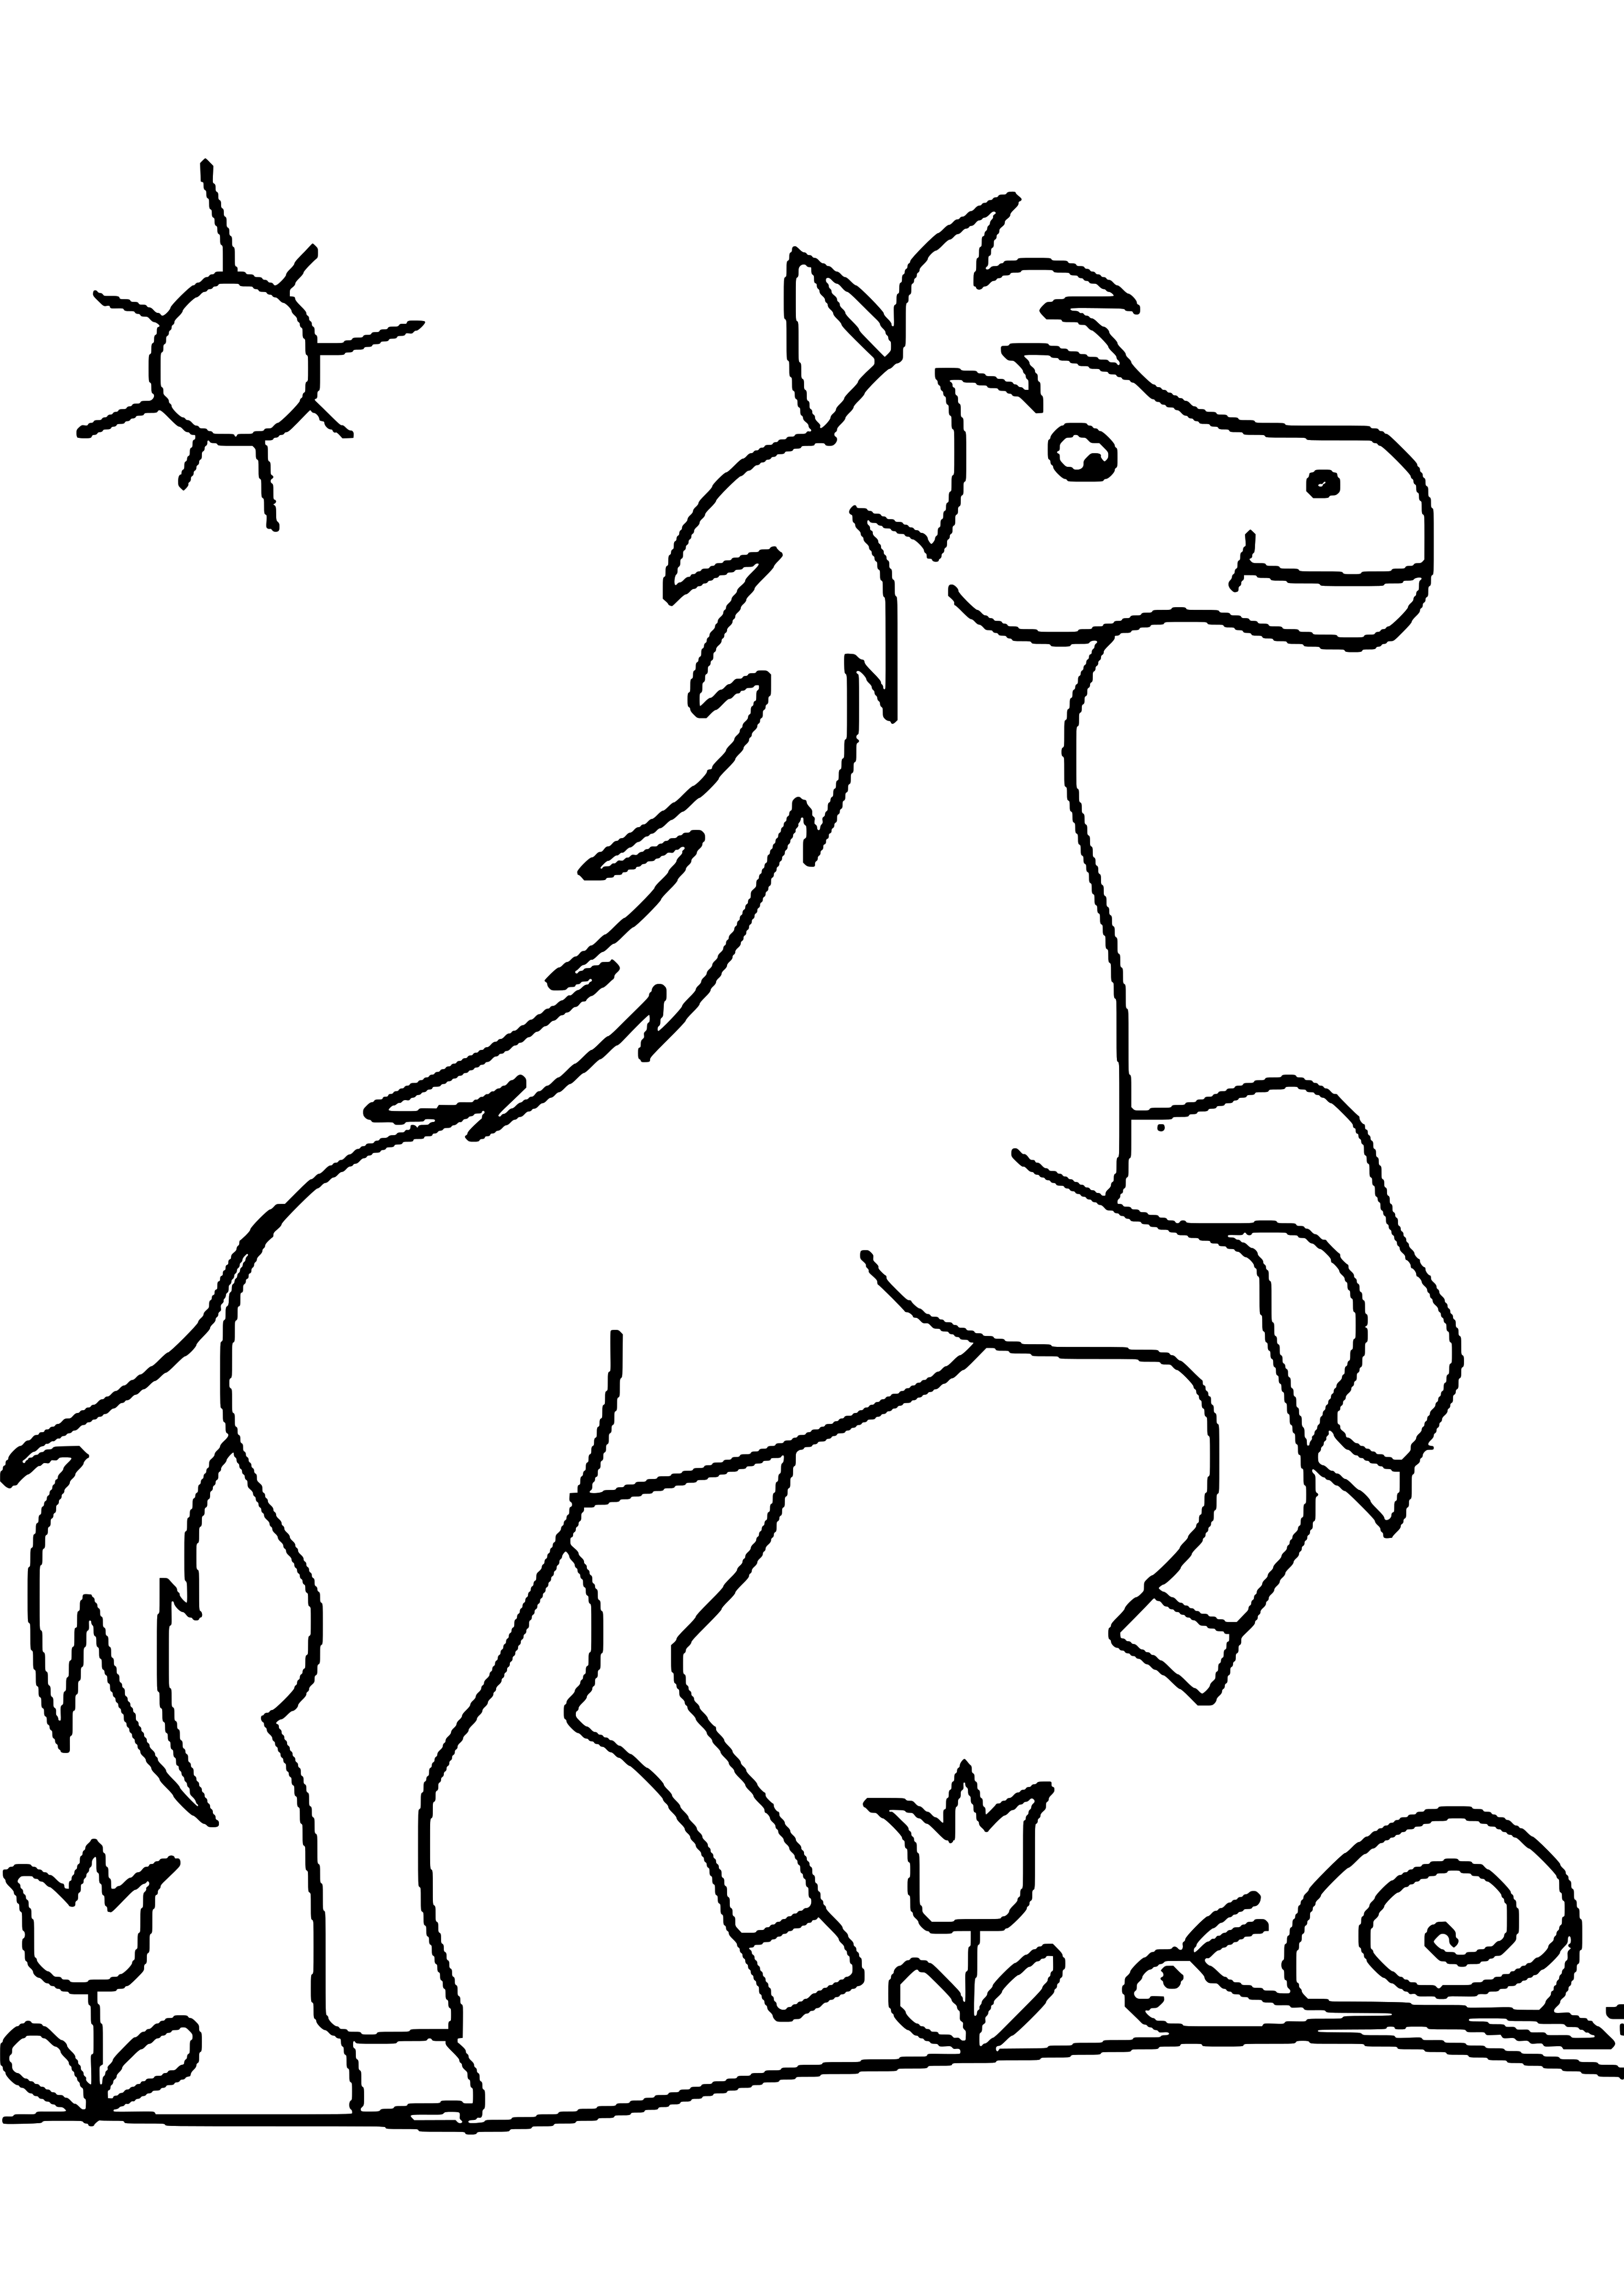 Раскраска лошадка для детей 5-6 лет